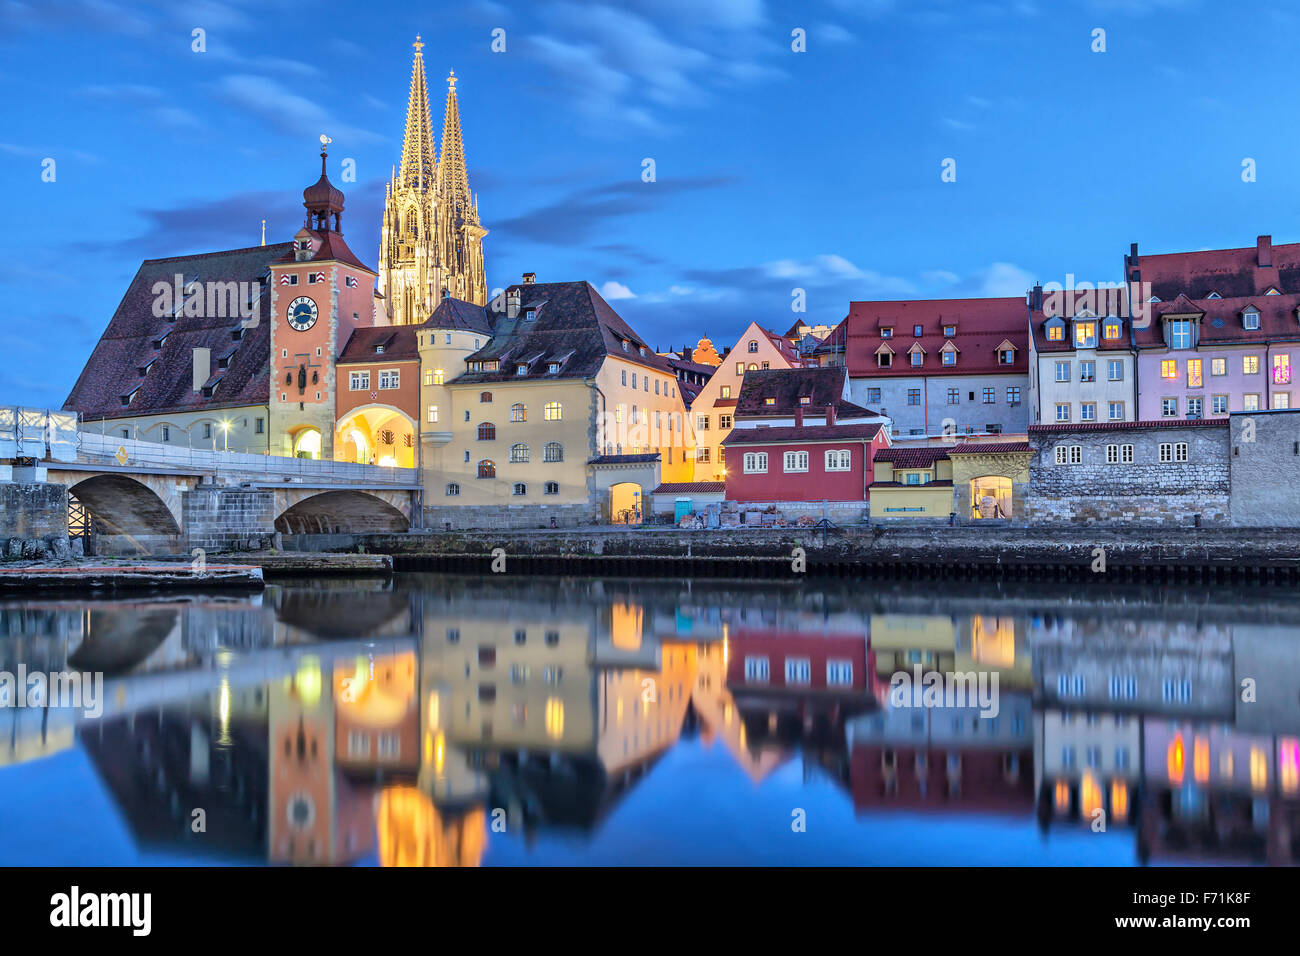 Histórico Puente de Piedra, el Puente de la torre y edificios en la noche, Regensburg, Alemania Foto de stock